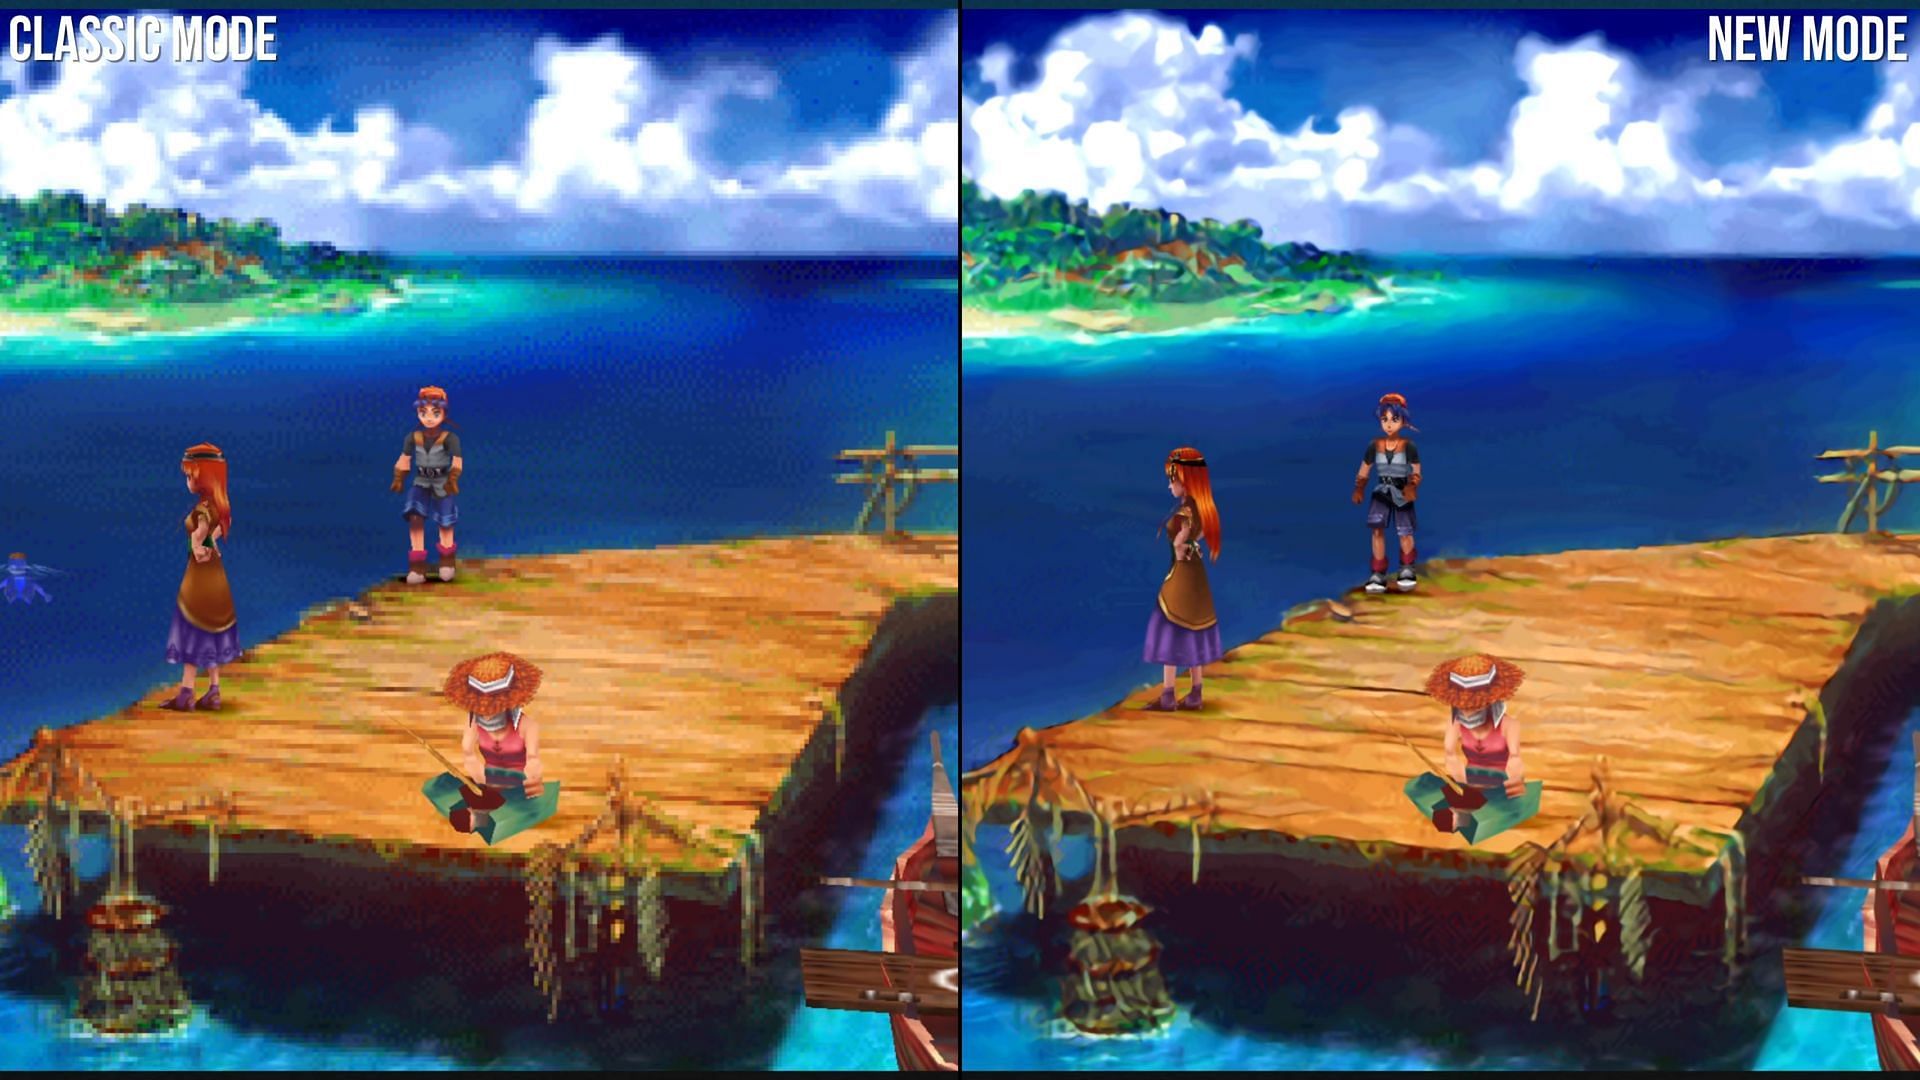 New Chrono Cross Screenshots Compare Original to Remaster